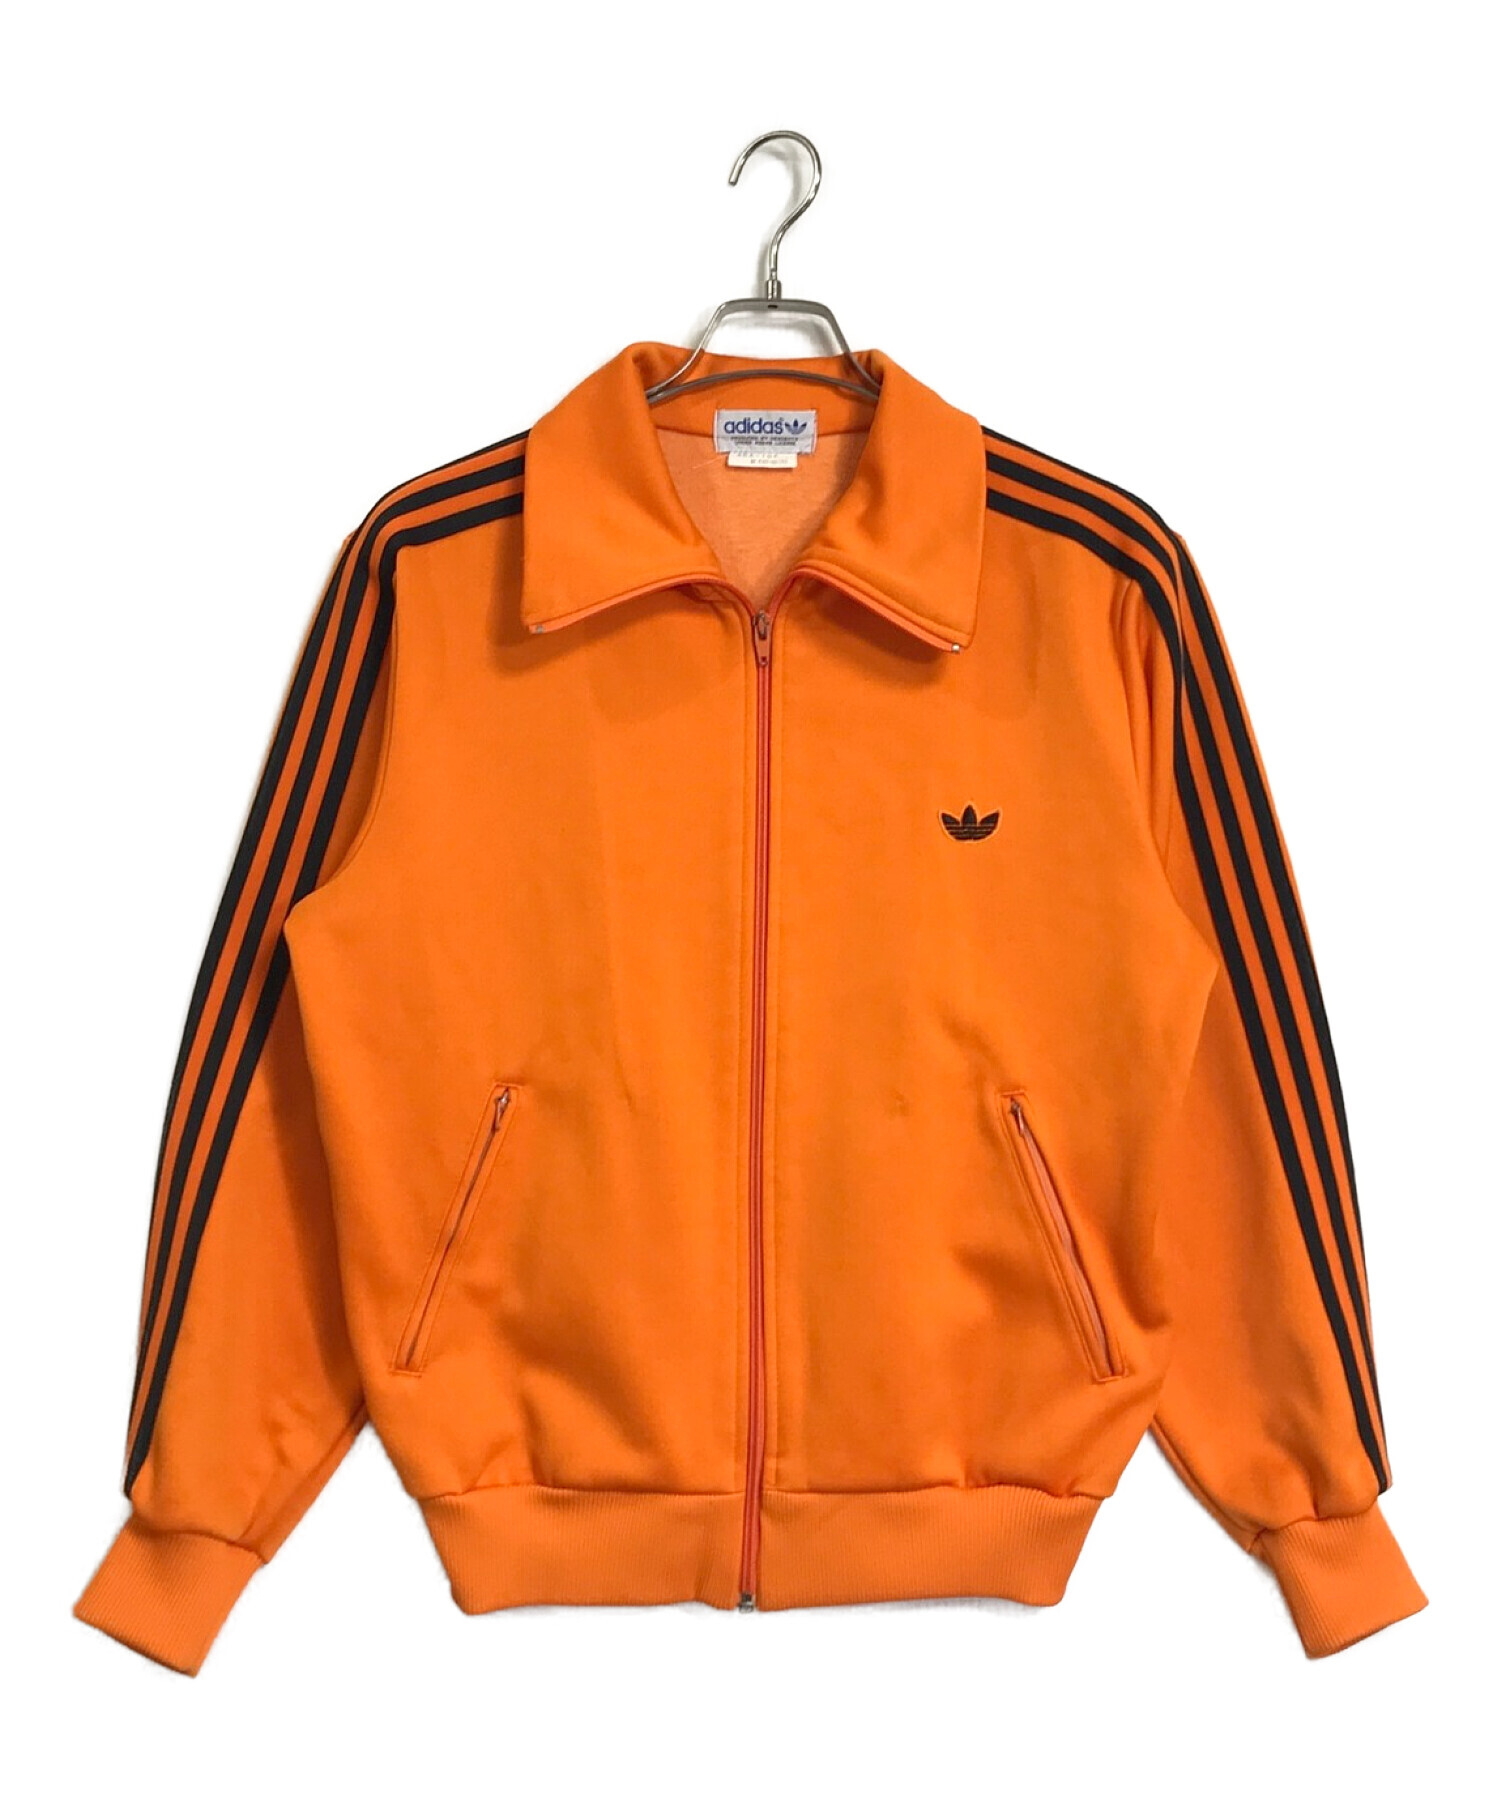 adidas (アディダス) トラックジャケット オレンジ サイズ:M